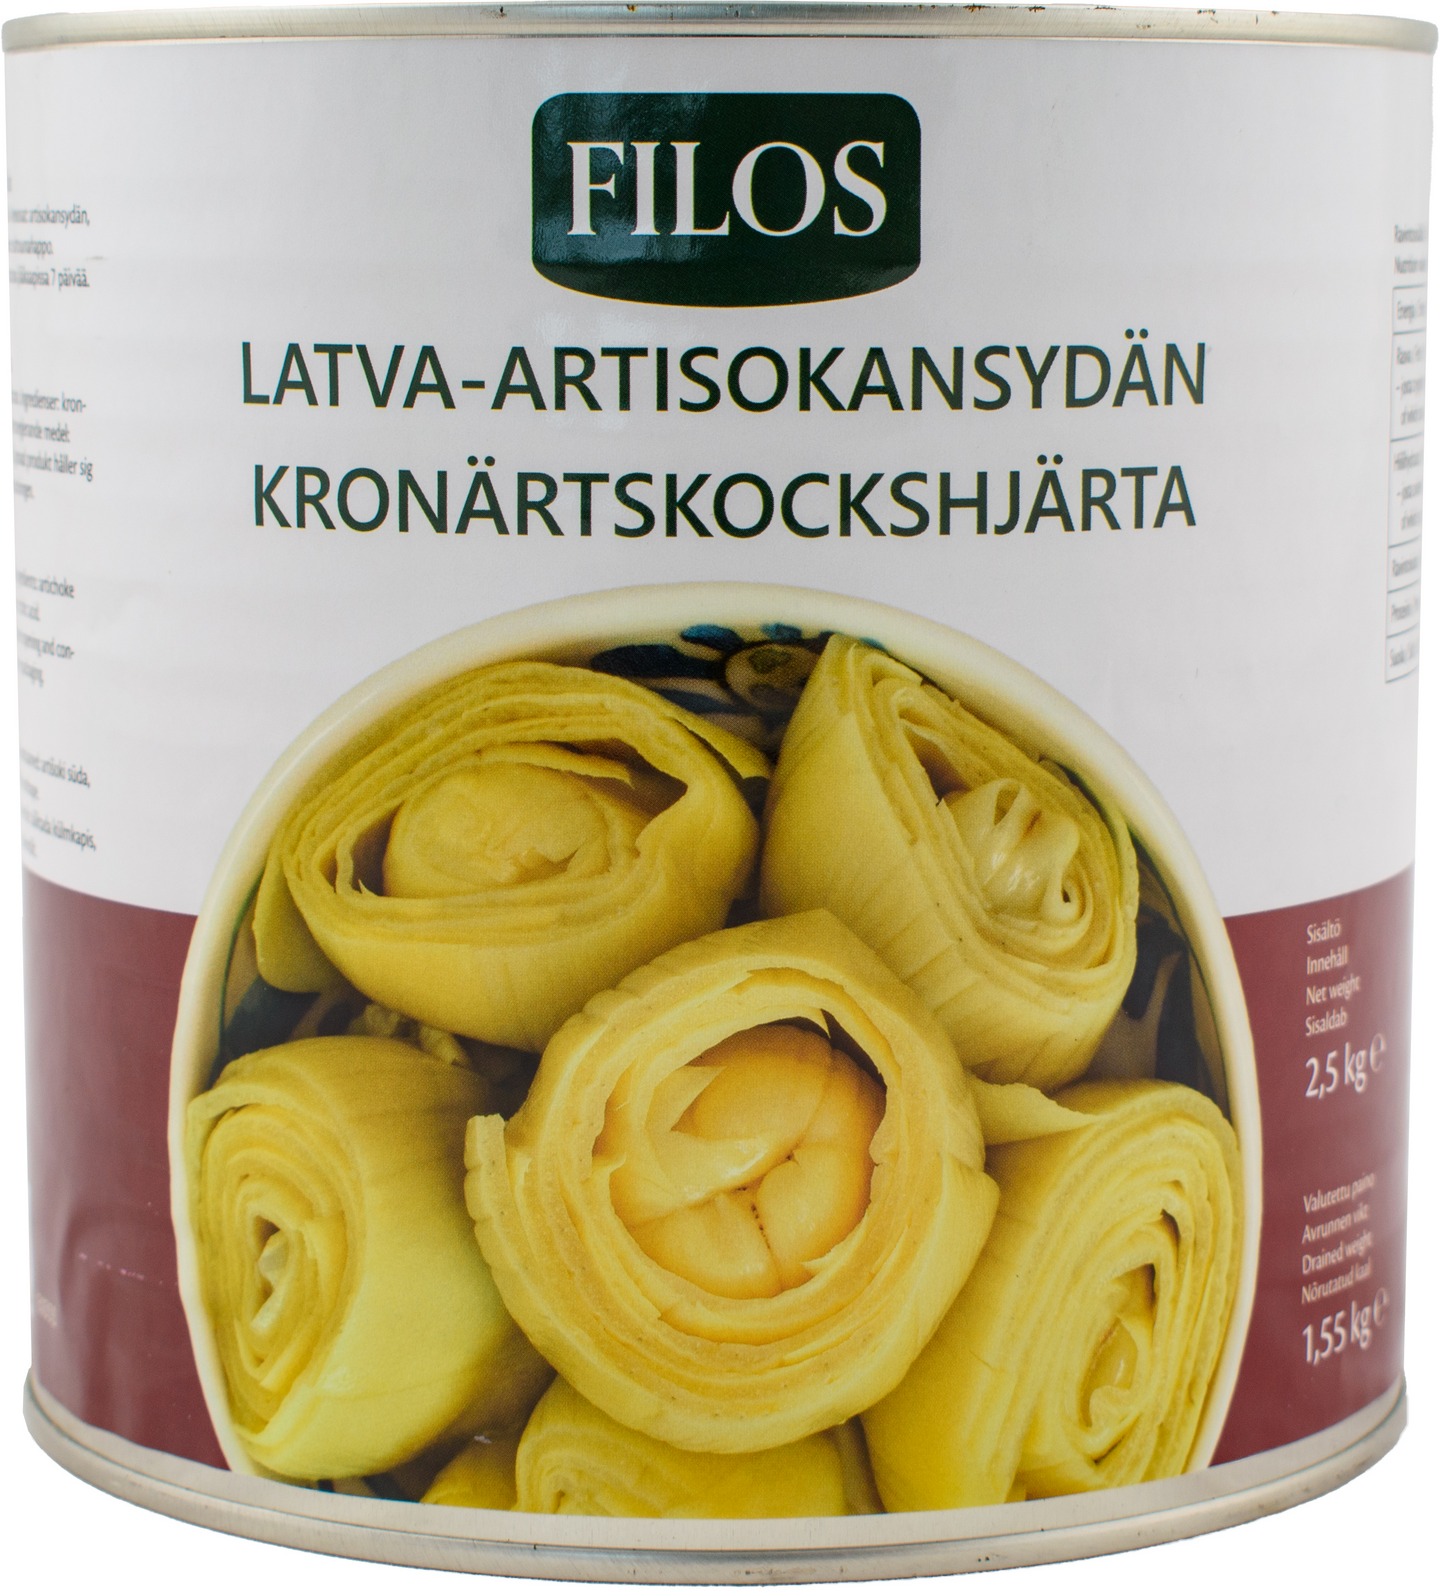 Filos latva-artisokansydän 2,5/1,55 kg